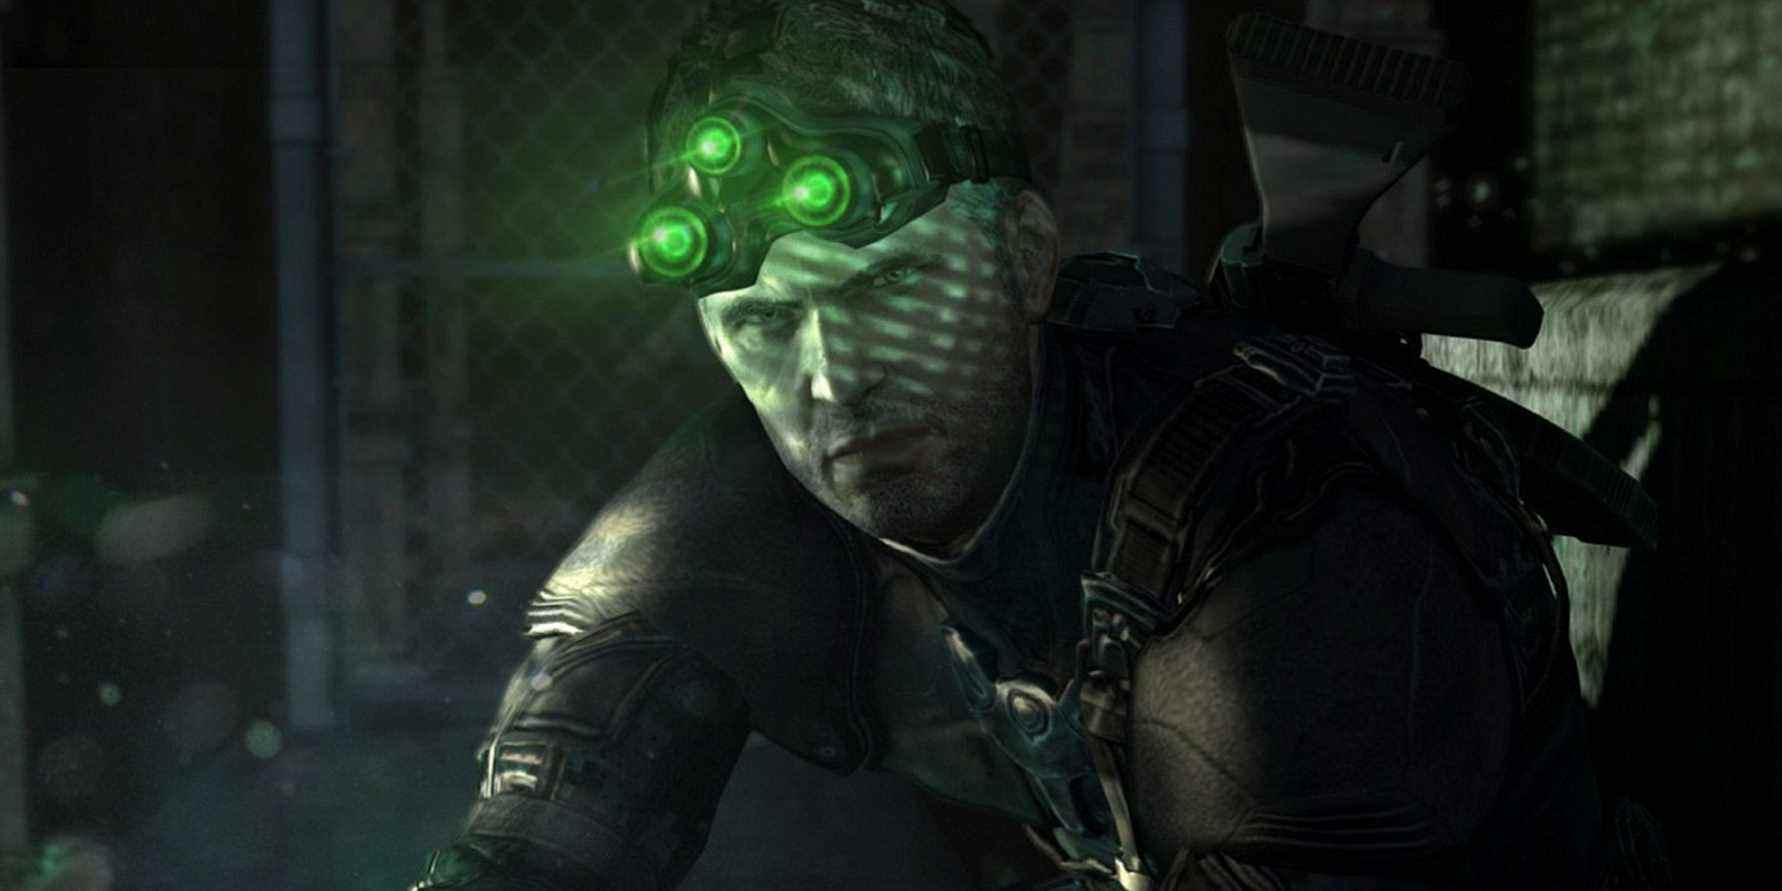 Image de Splinter Cell montrant Sam Fisher portant ses lunettes de vision nocturne vertes.